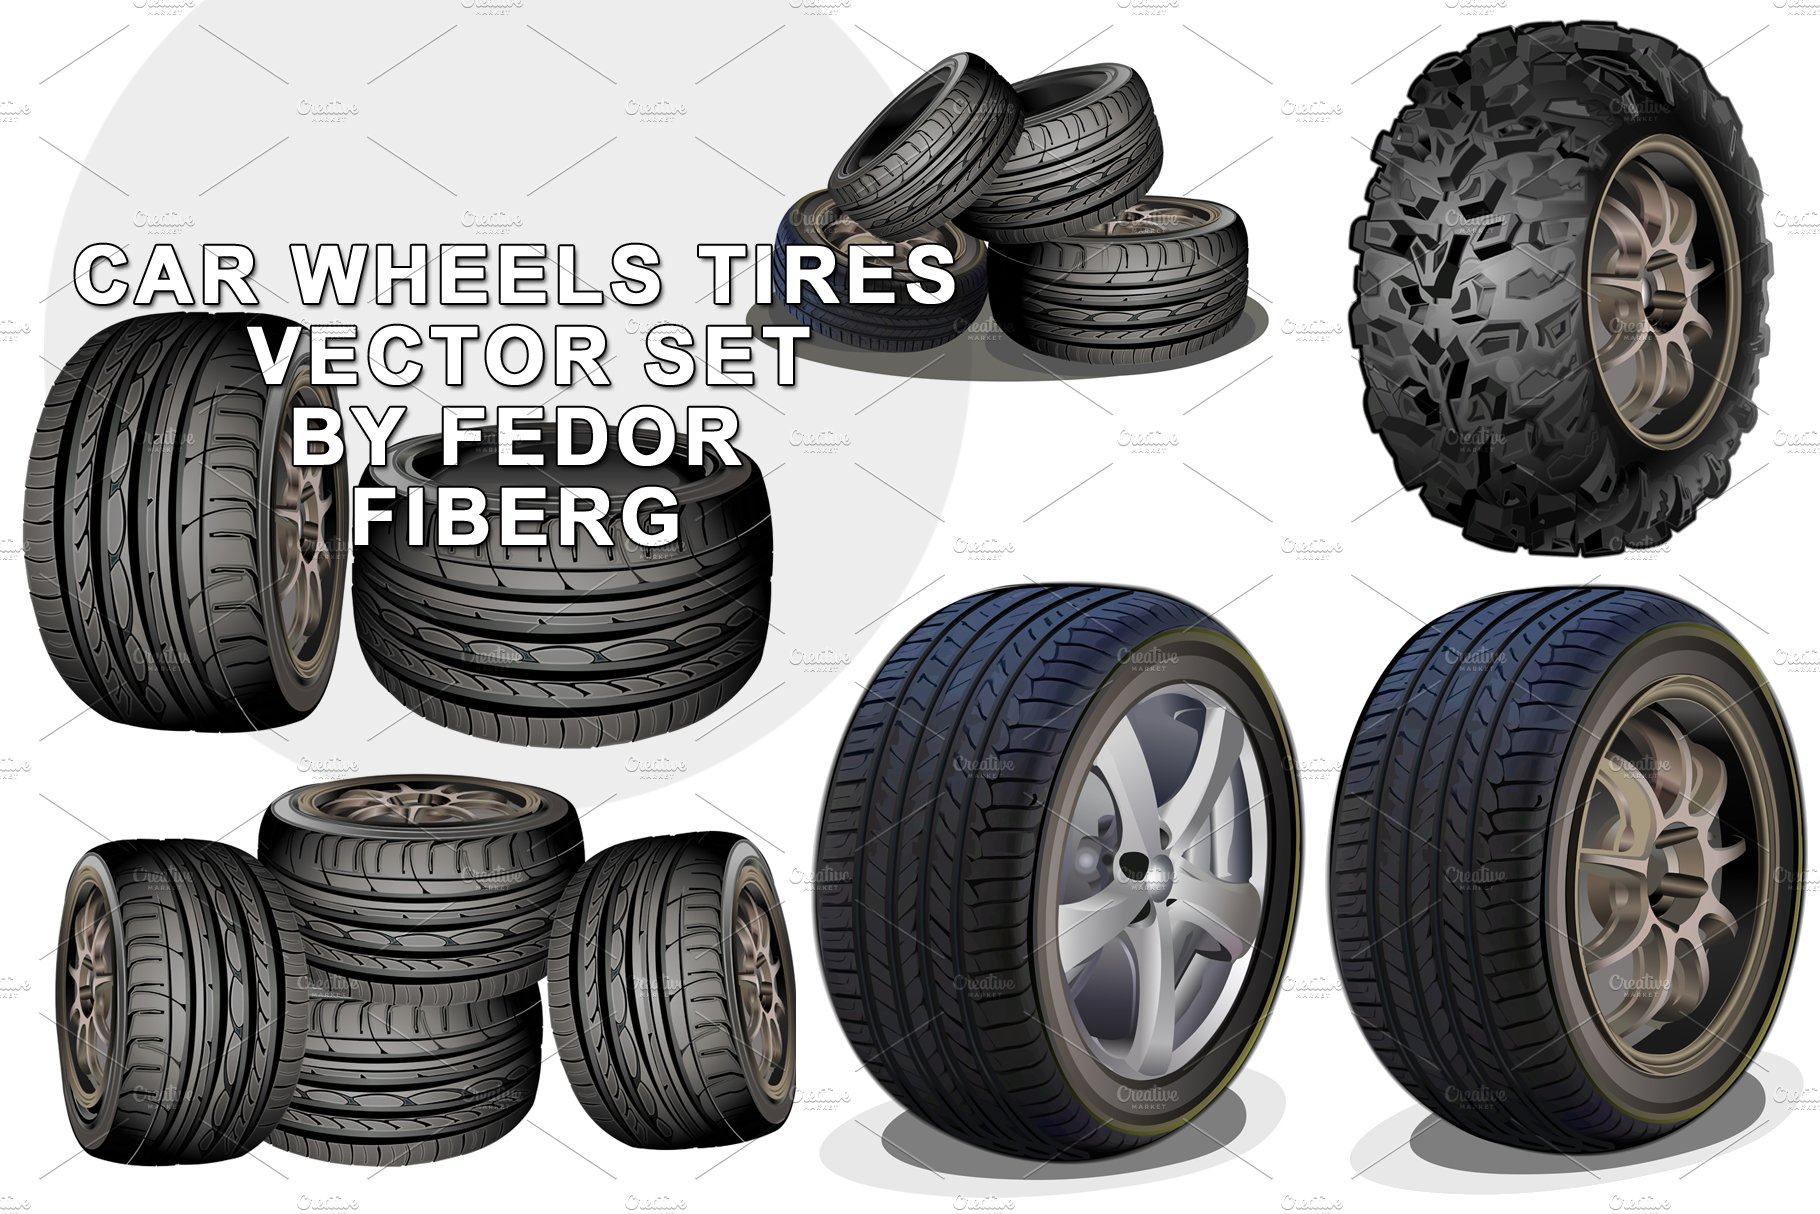 Car wheels tires vector big set cover image.